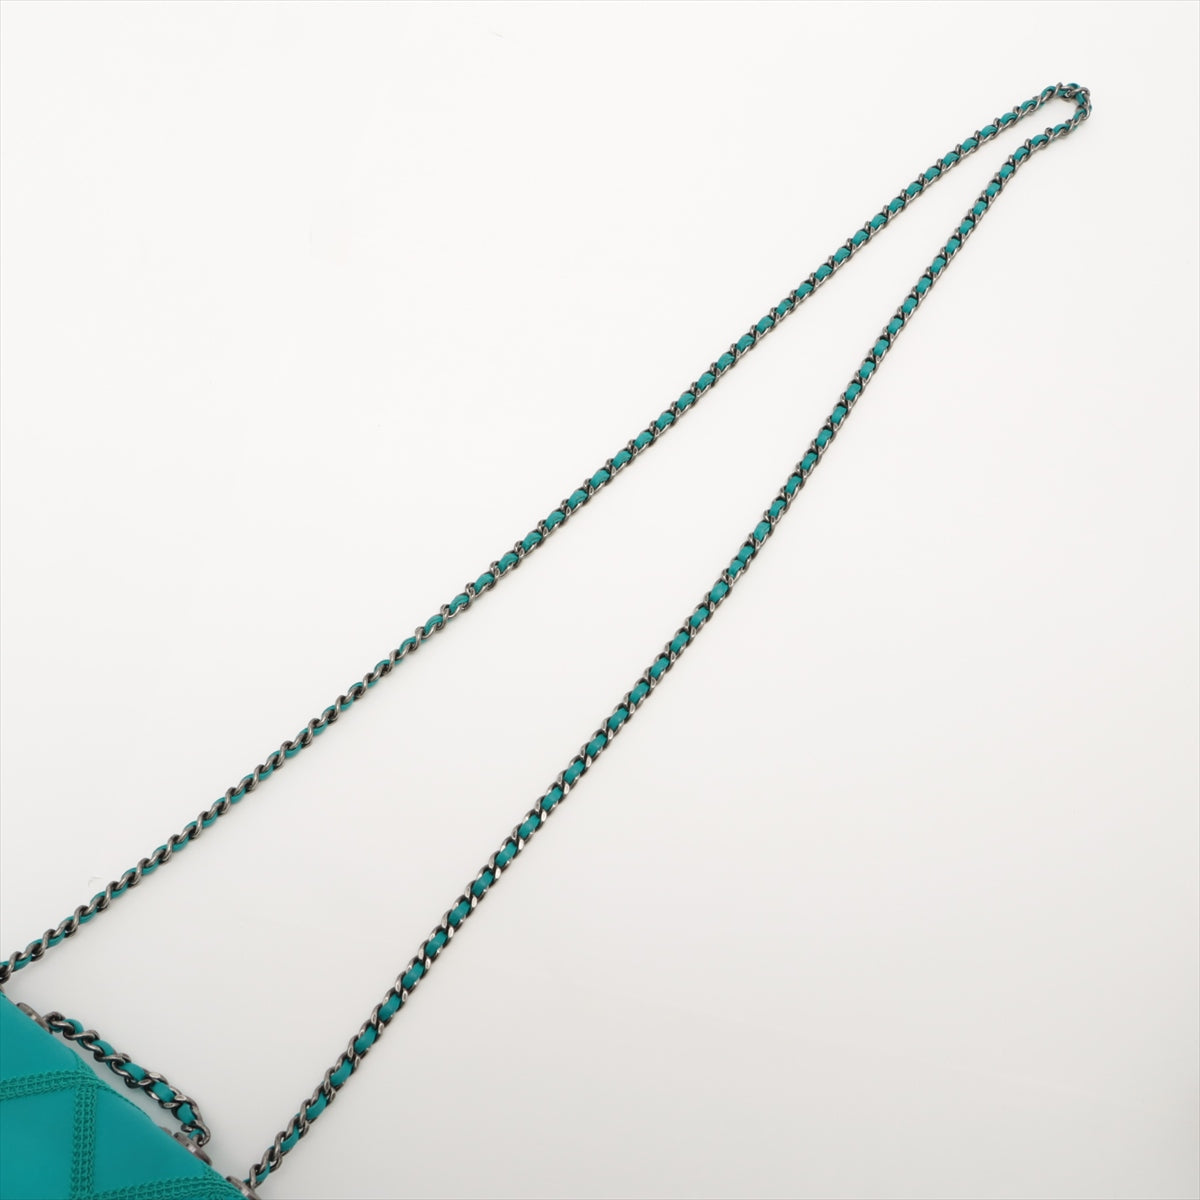 Chanel Bicolore Satin Single flap Double chain bag Green Gunmetallic hardware 17XXXXXX